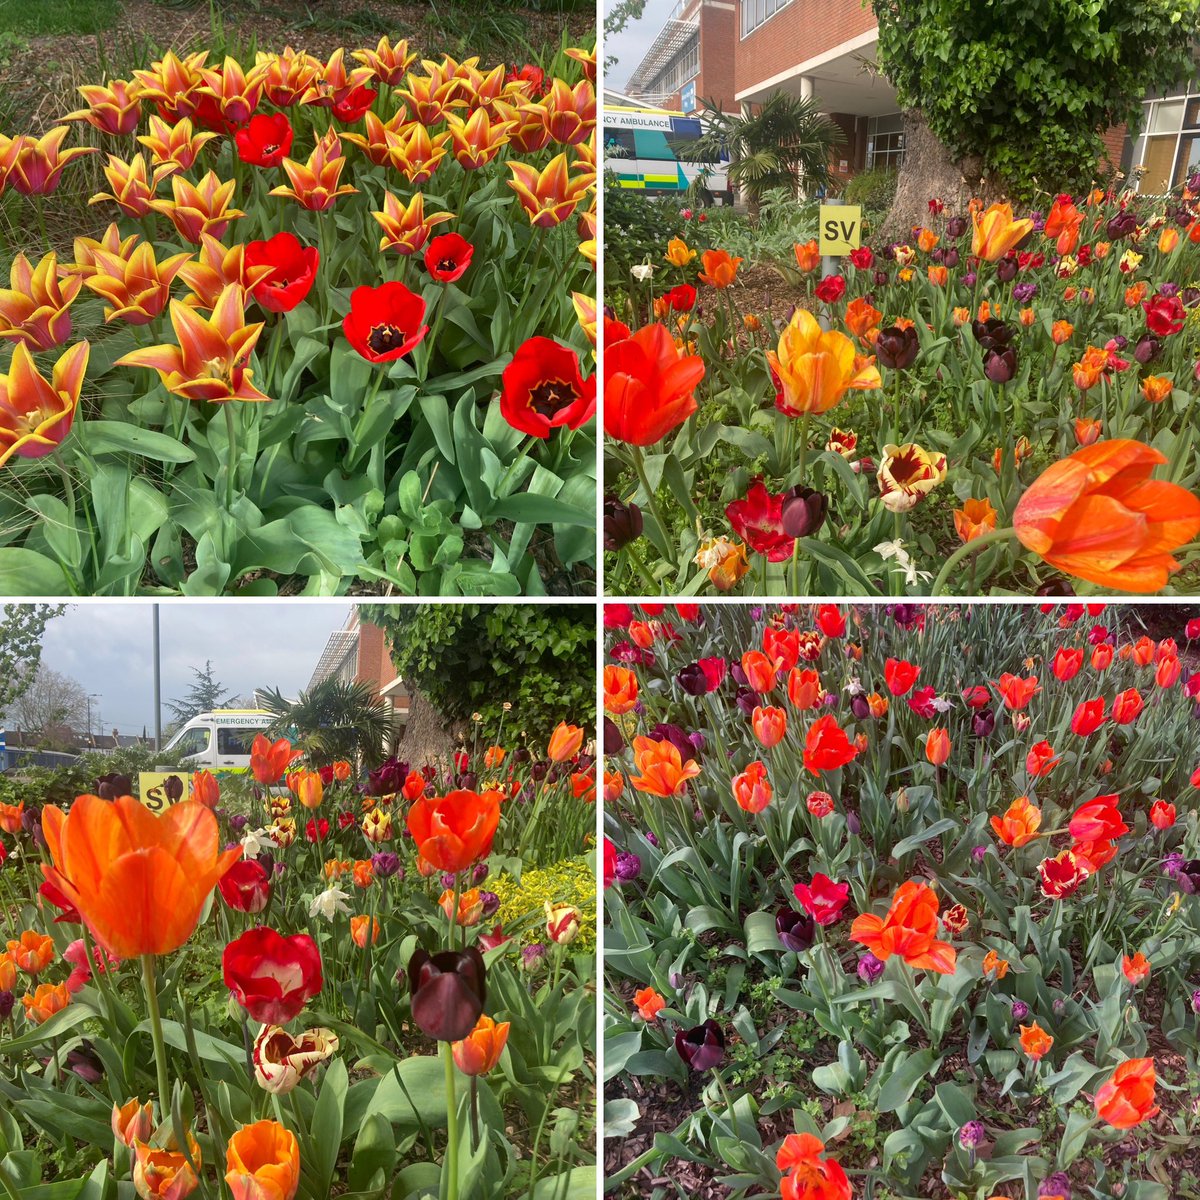 #tulipomania #tuliptime @StGeorgesTrust #AprilVibes #springtime